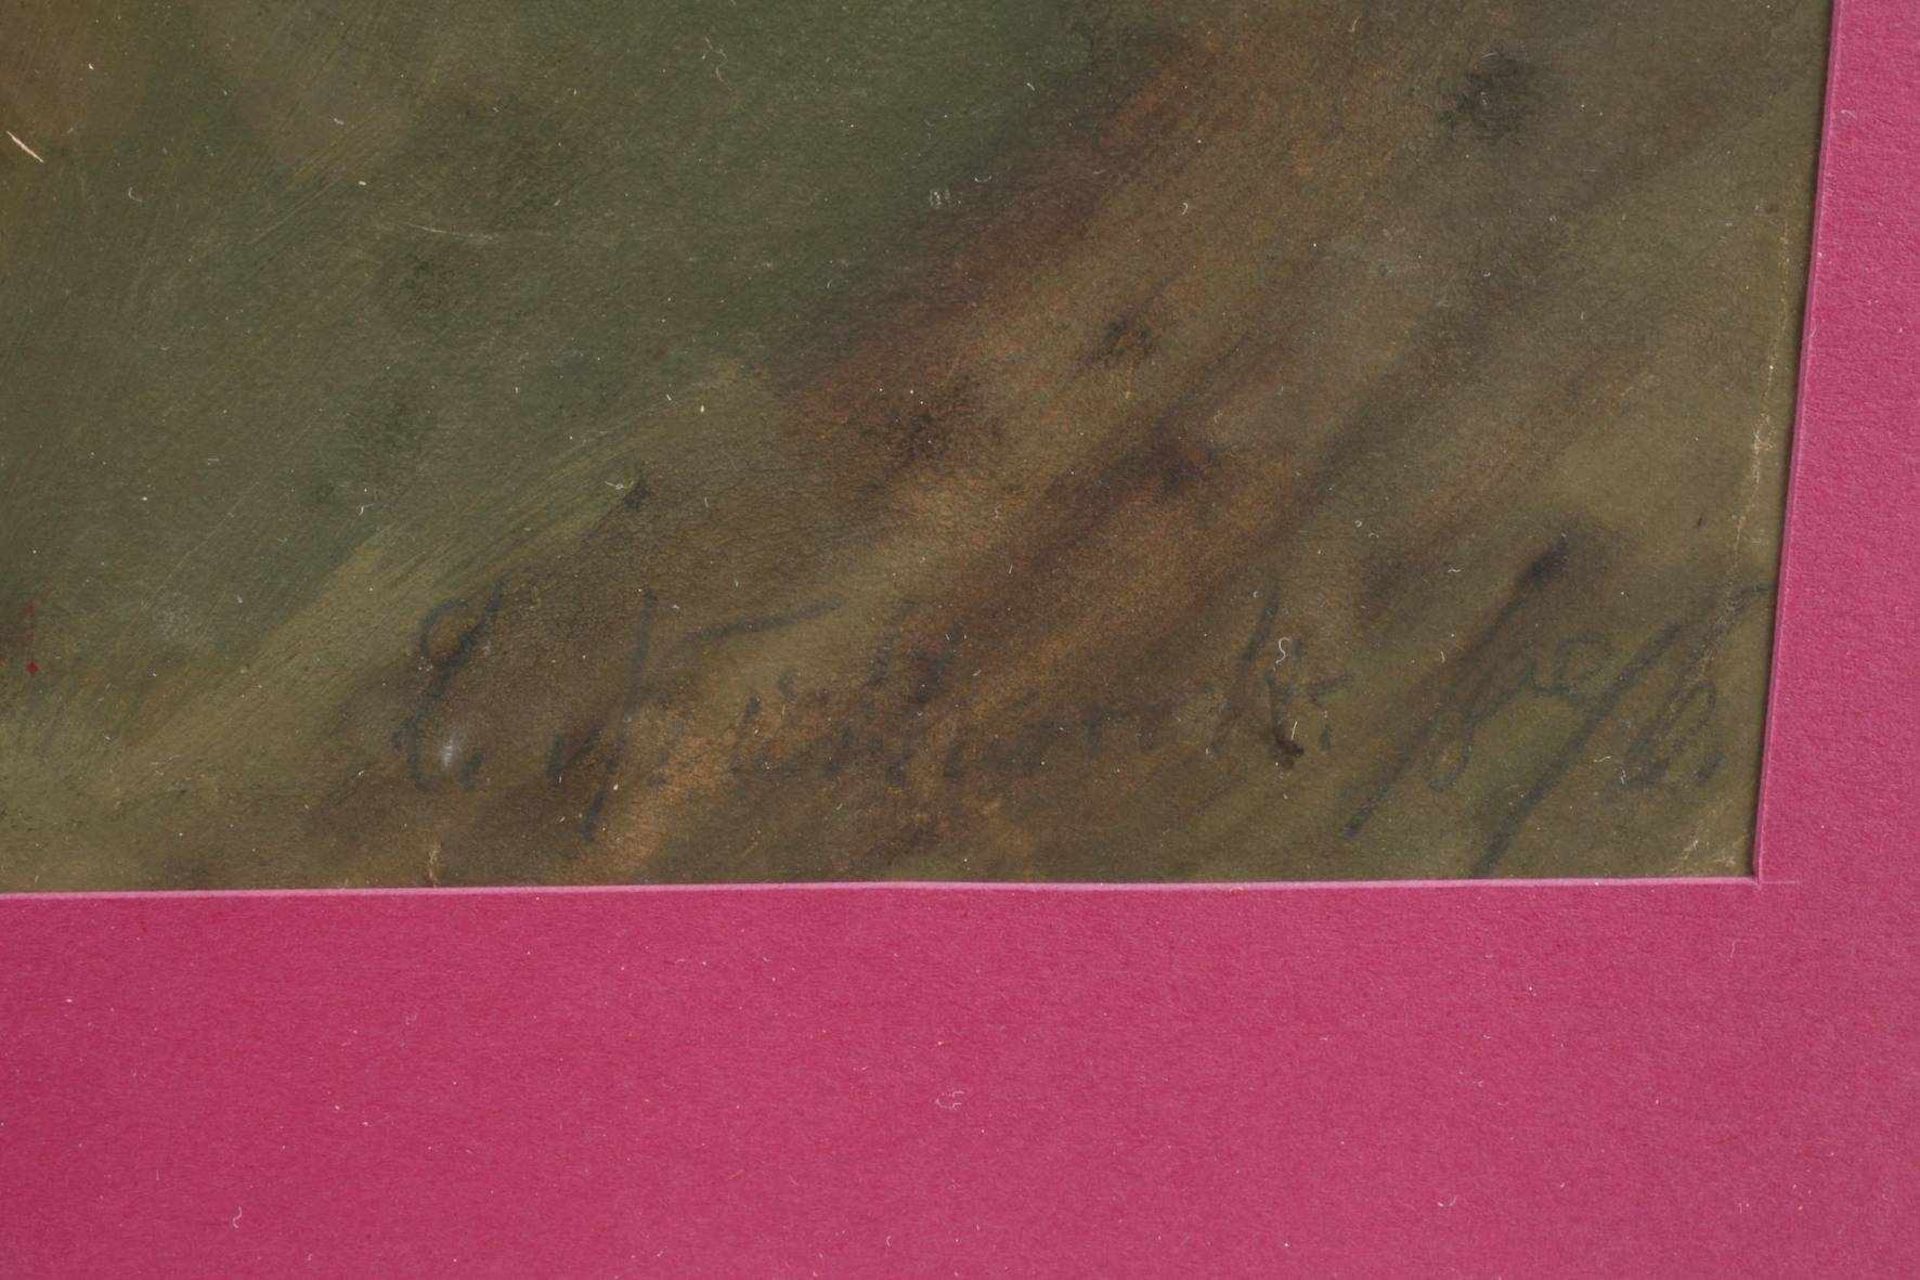 Pfingstrosenstudiedrei üppige rosa Pfingstrosenblüten vor grünem Grund, gekonnt festgehaltene, - Bild 3 aus 3